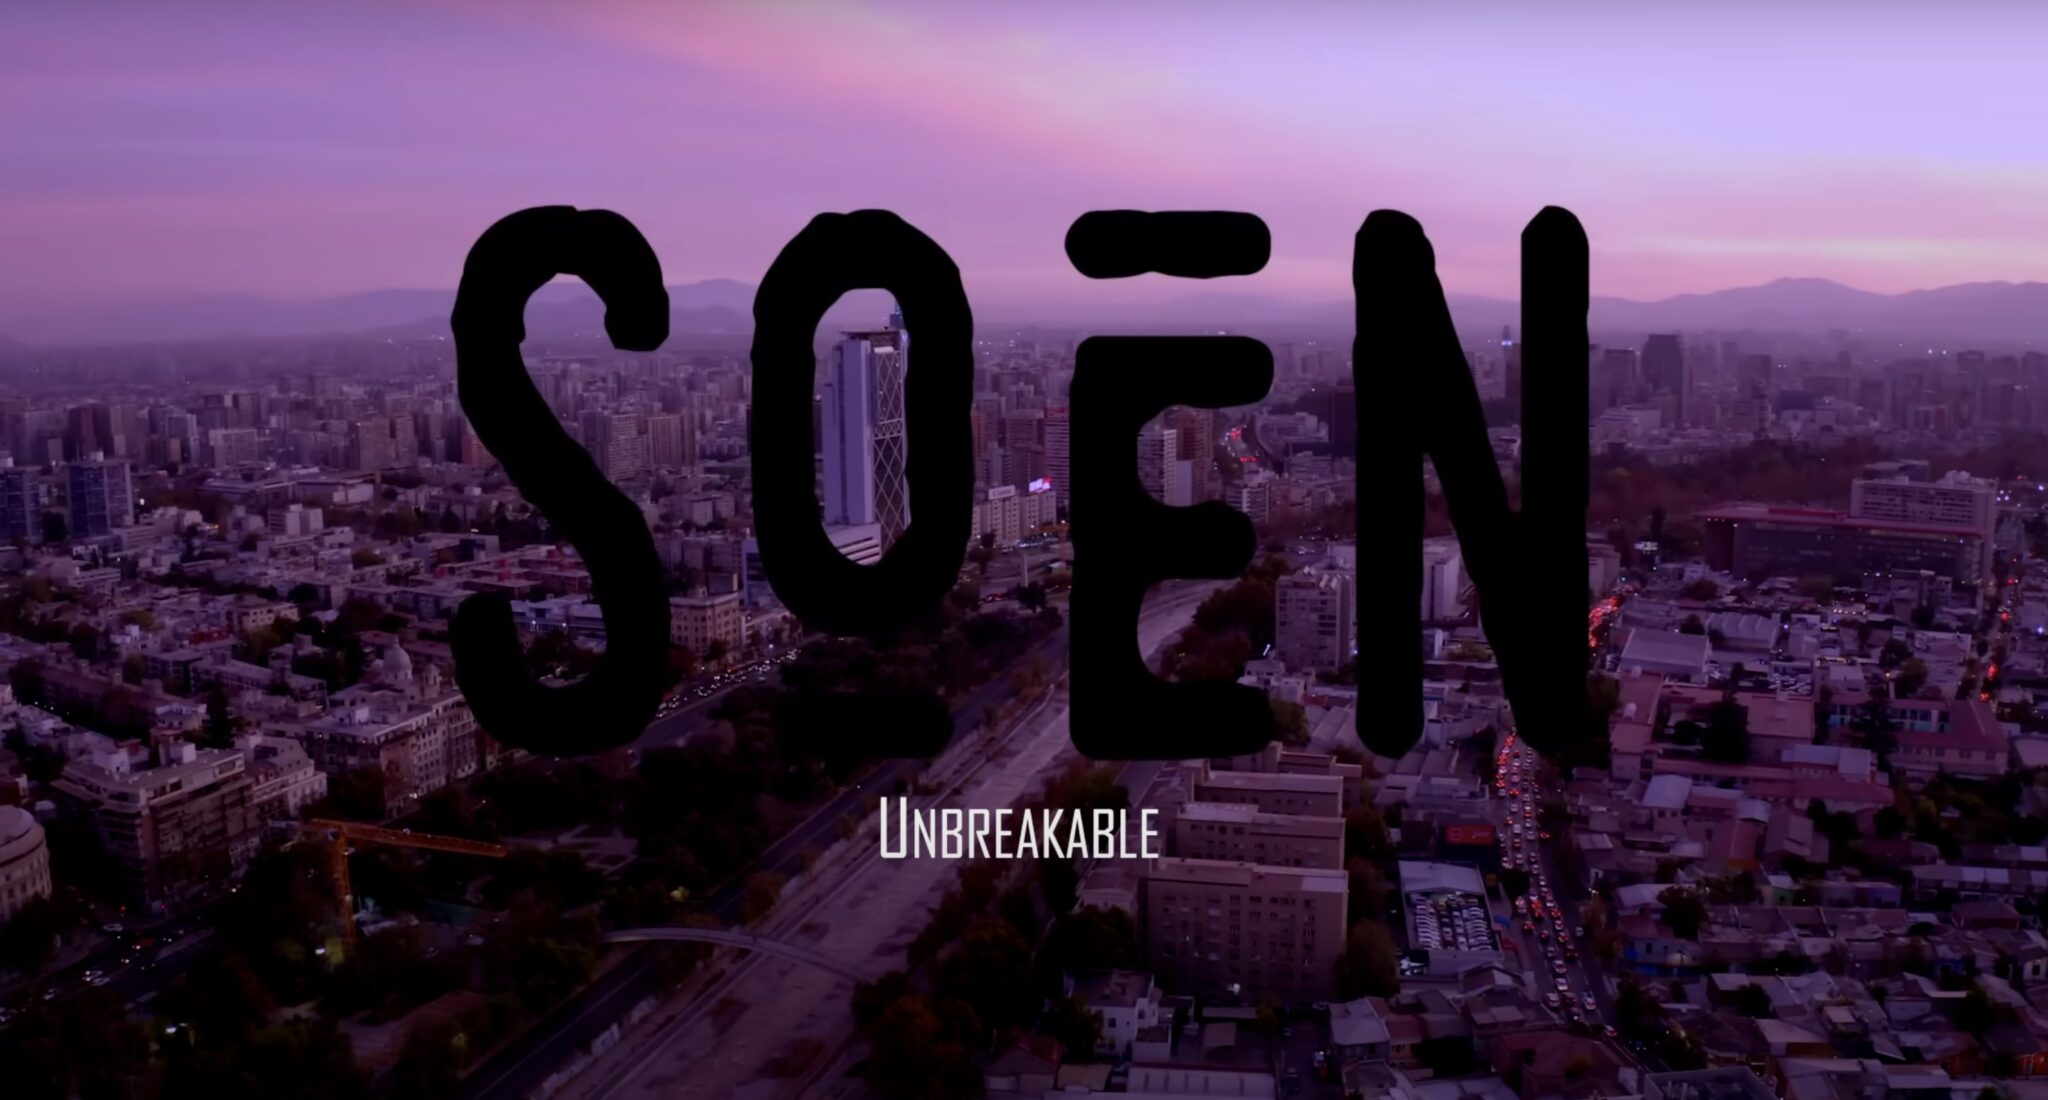 Soen release new single "Unbreakable" from new album ‘Memorial